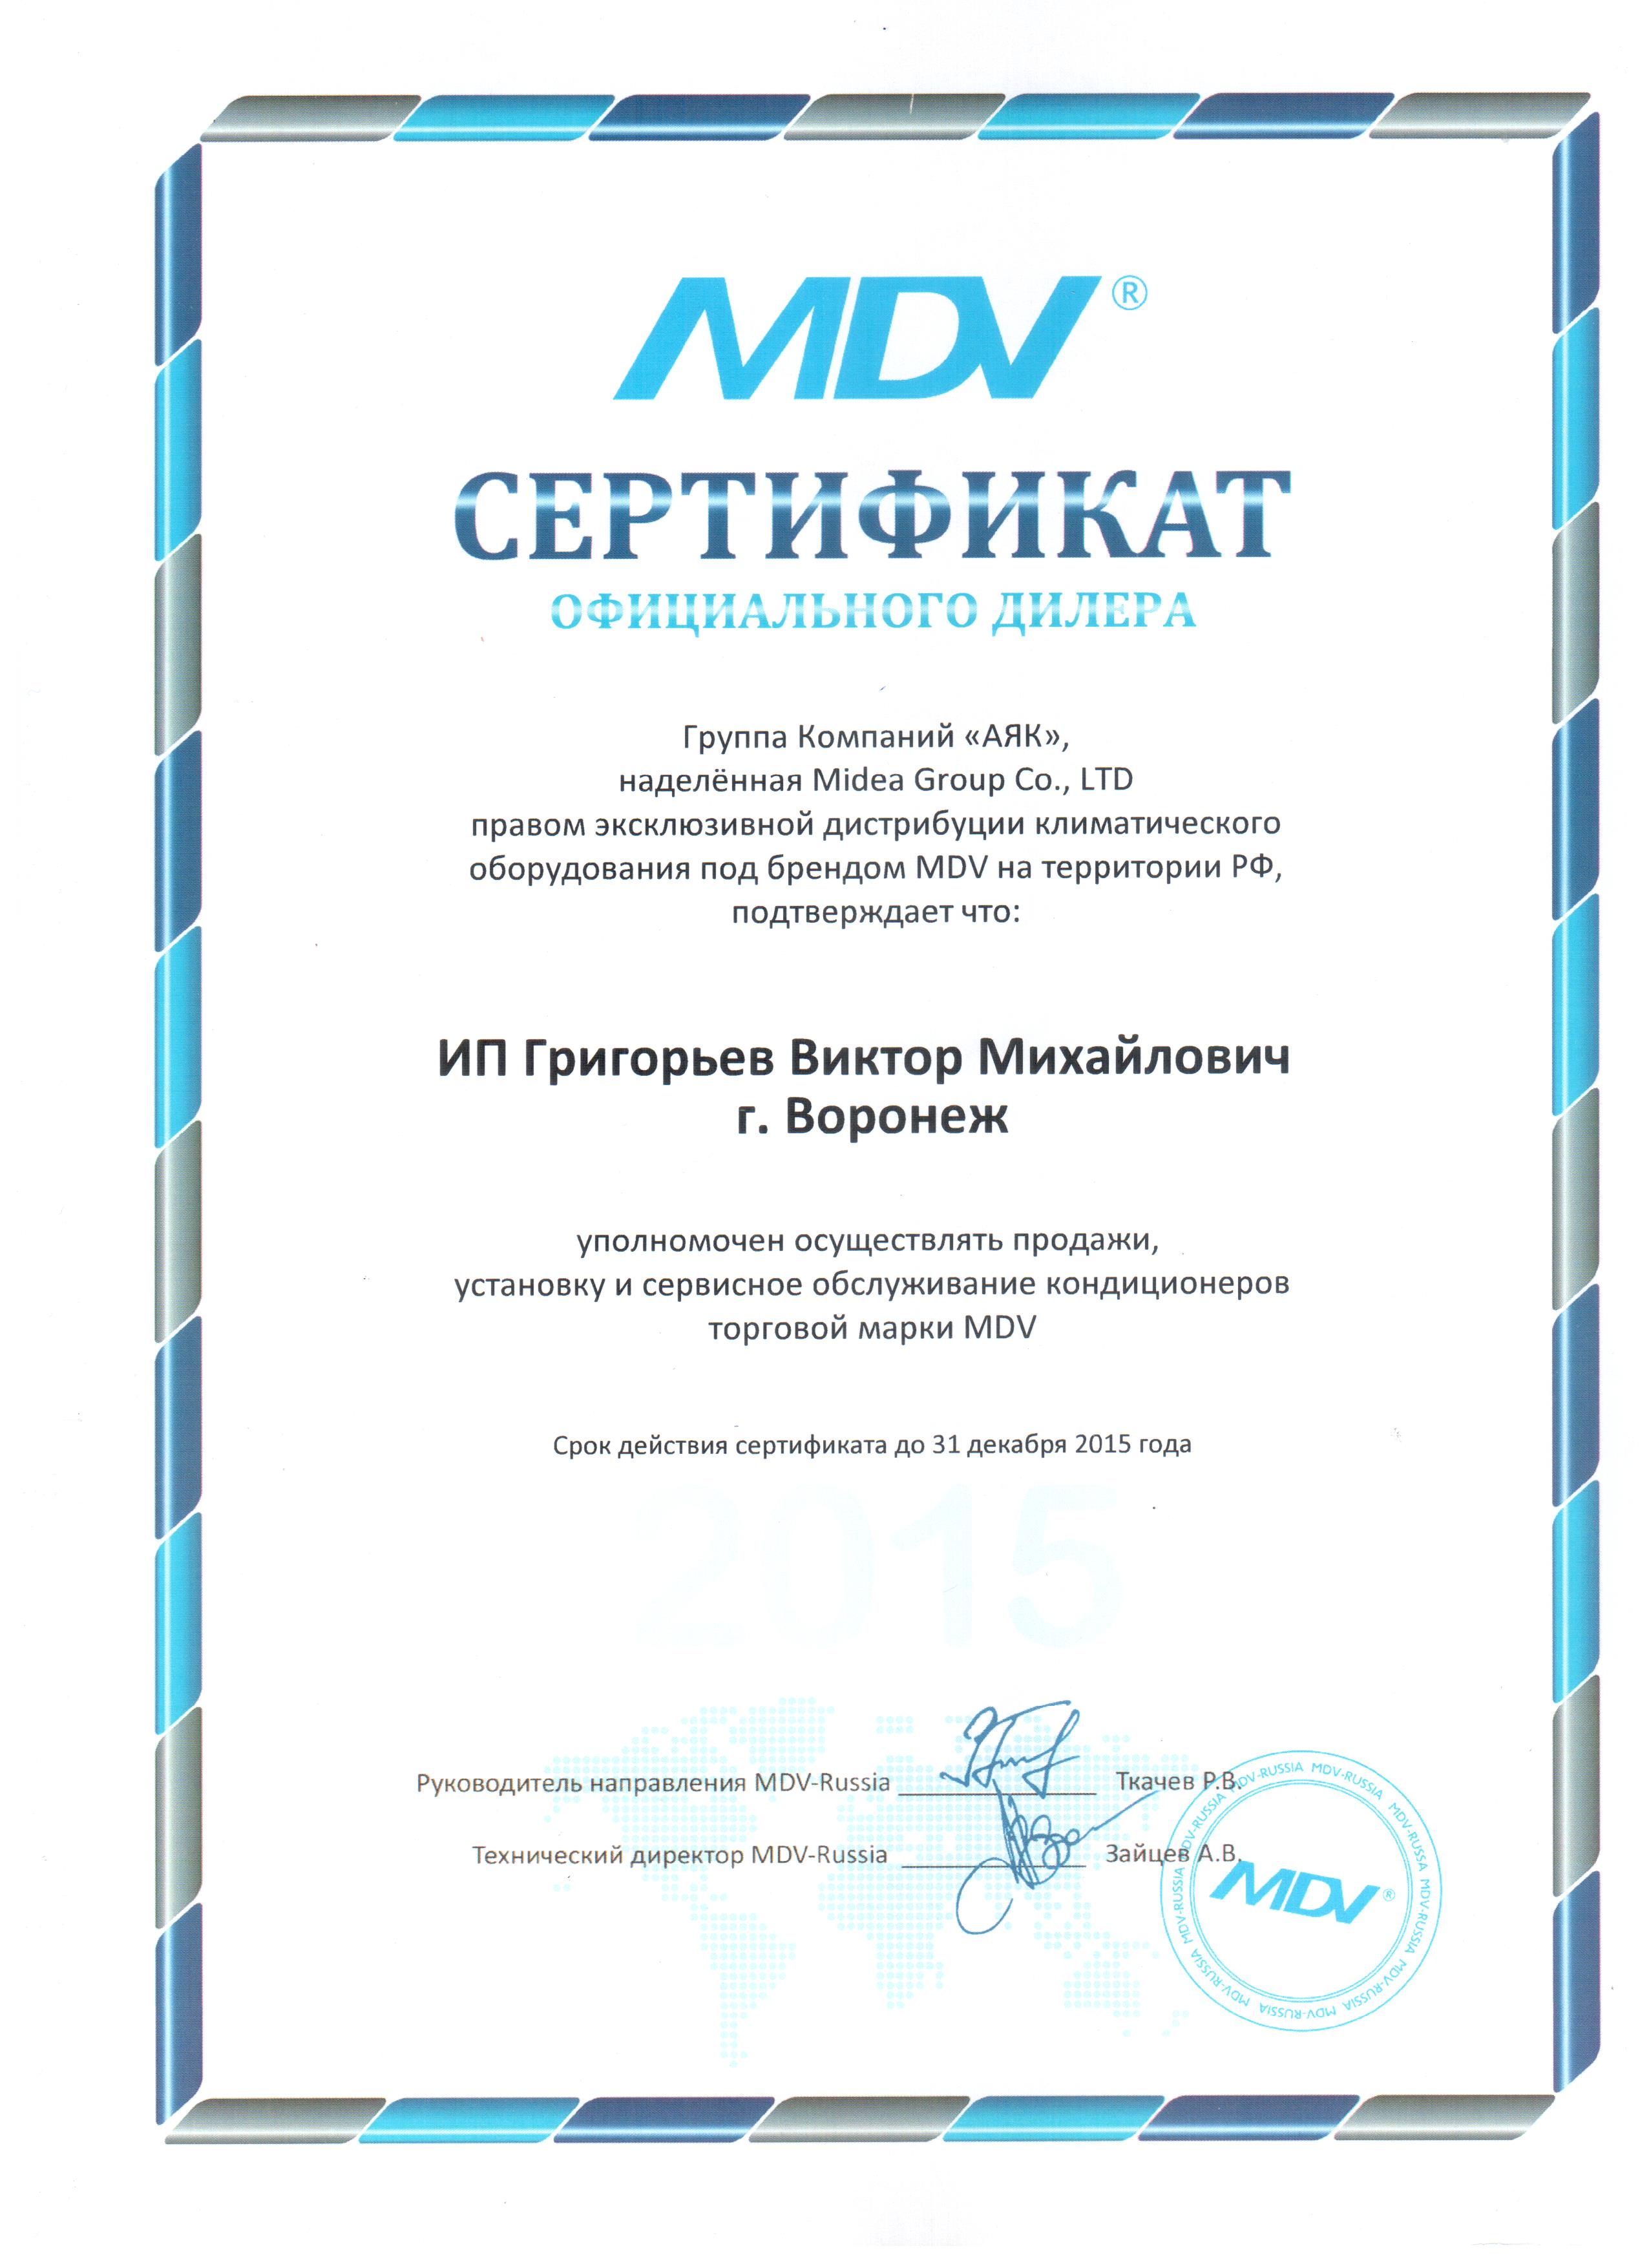 Нажмите на изображение, чтобы посмотреть сертификат MDV